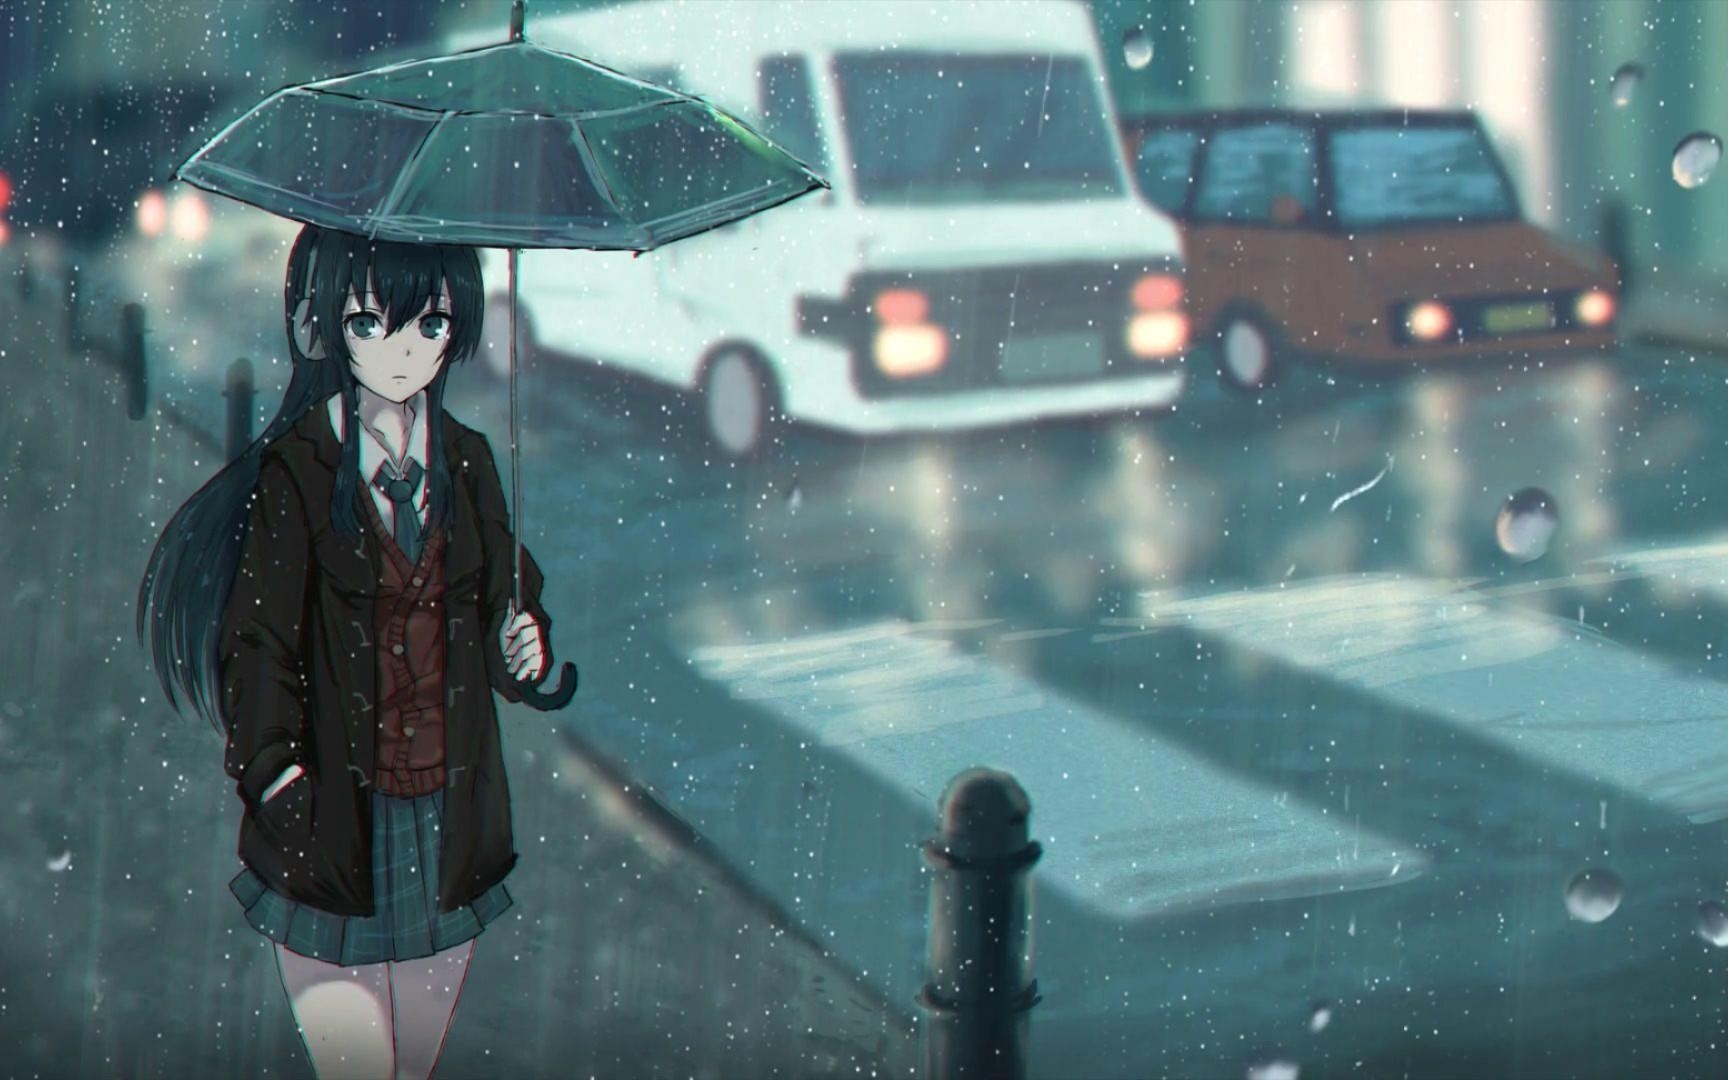 Hình ảnh hoạt hình mưa buồn, cô đơn. đẹp